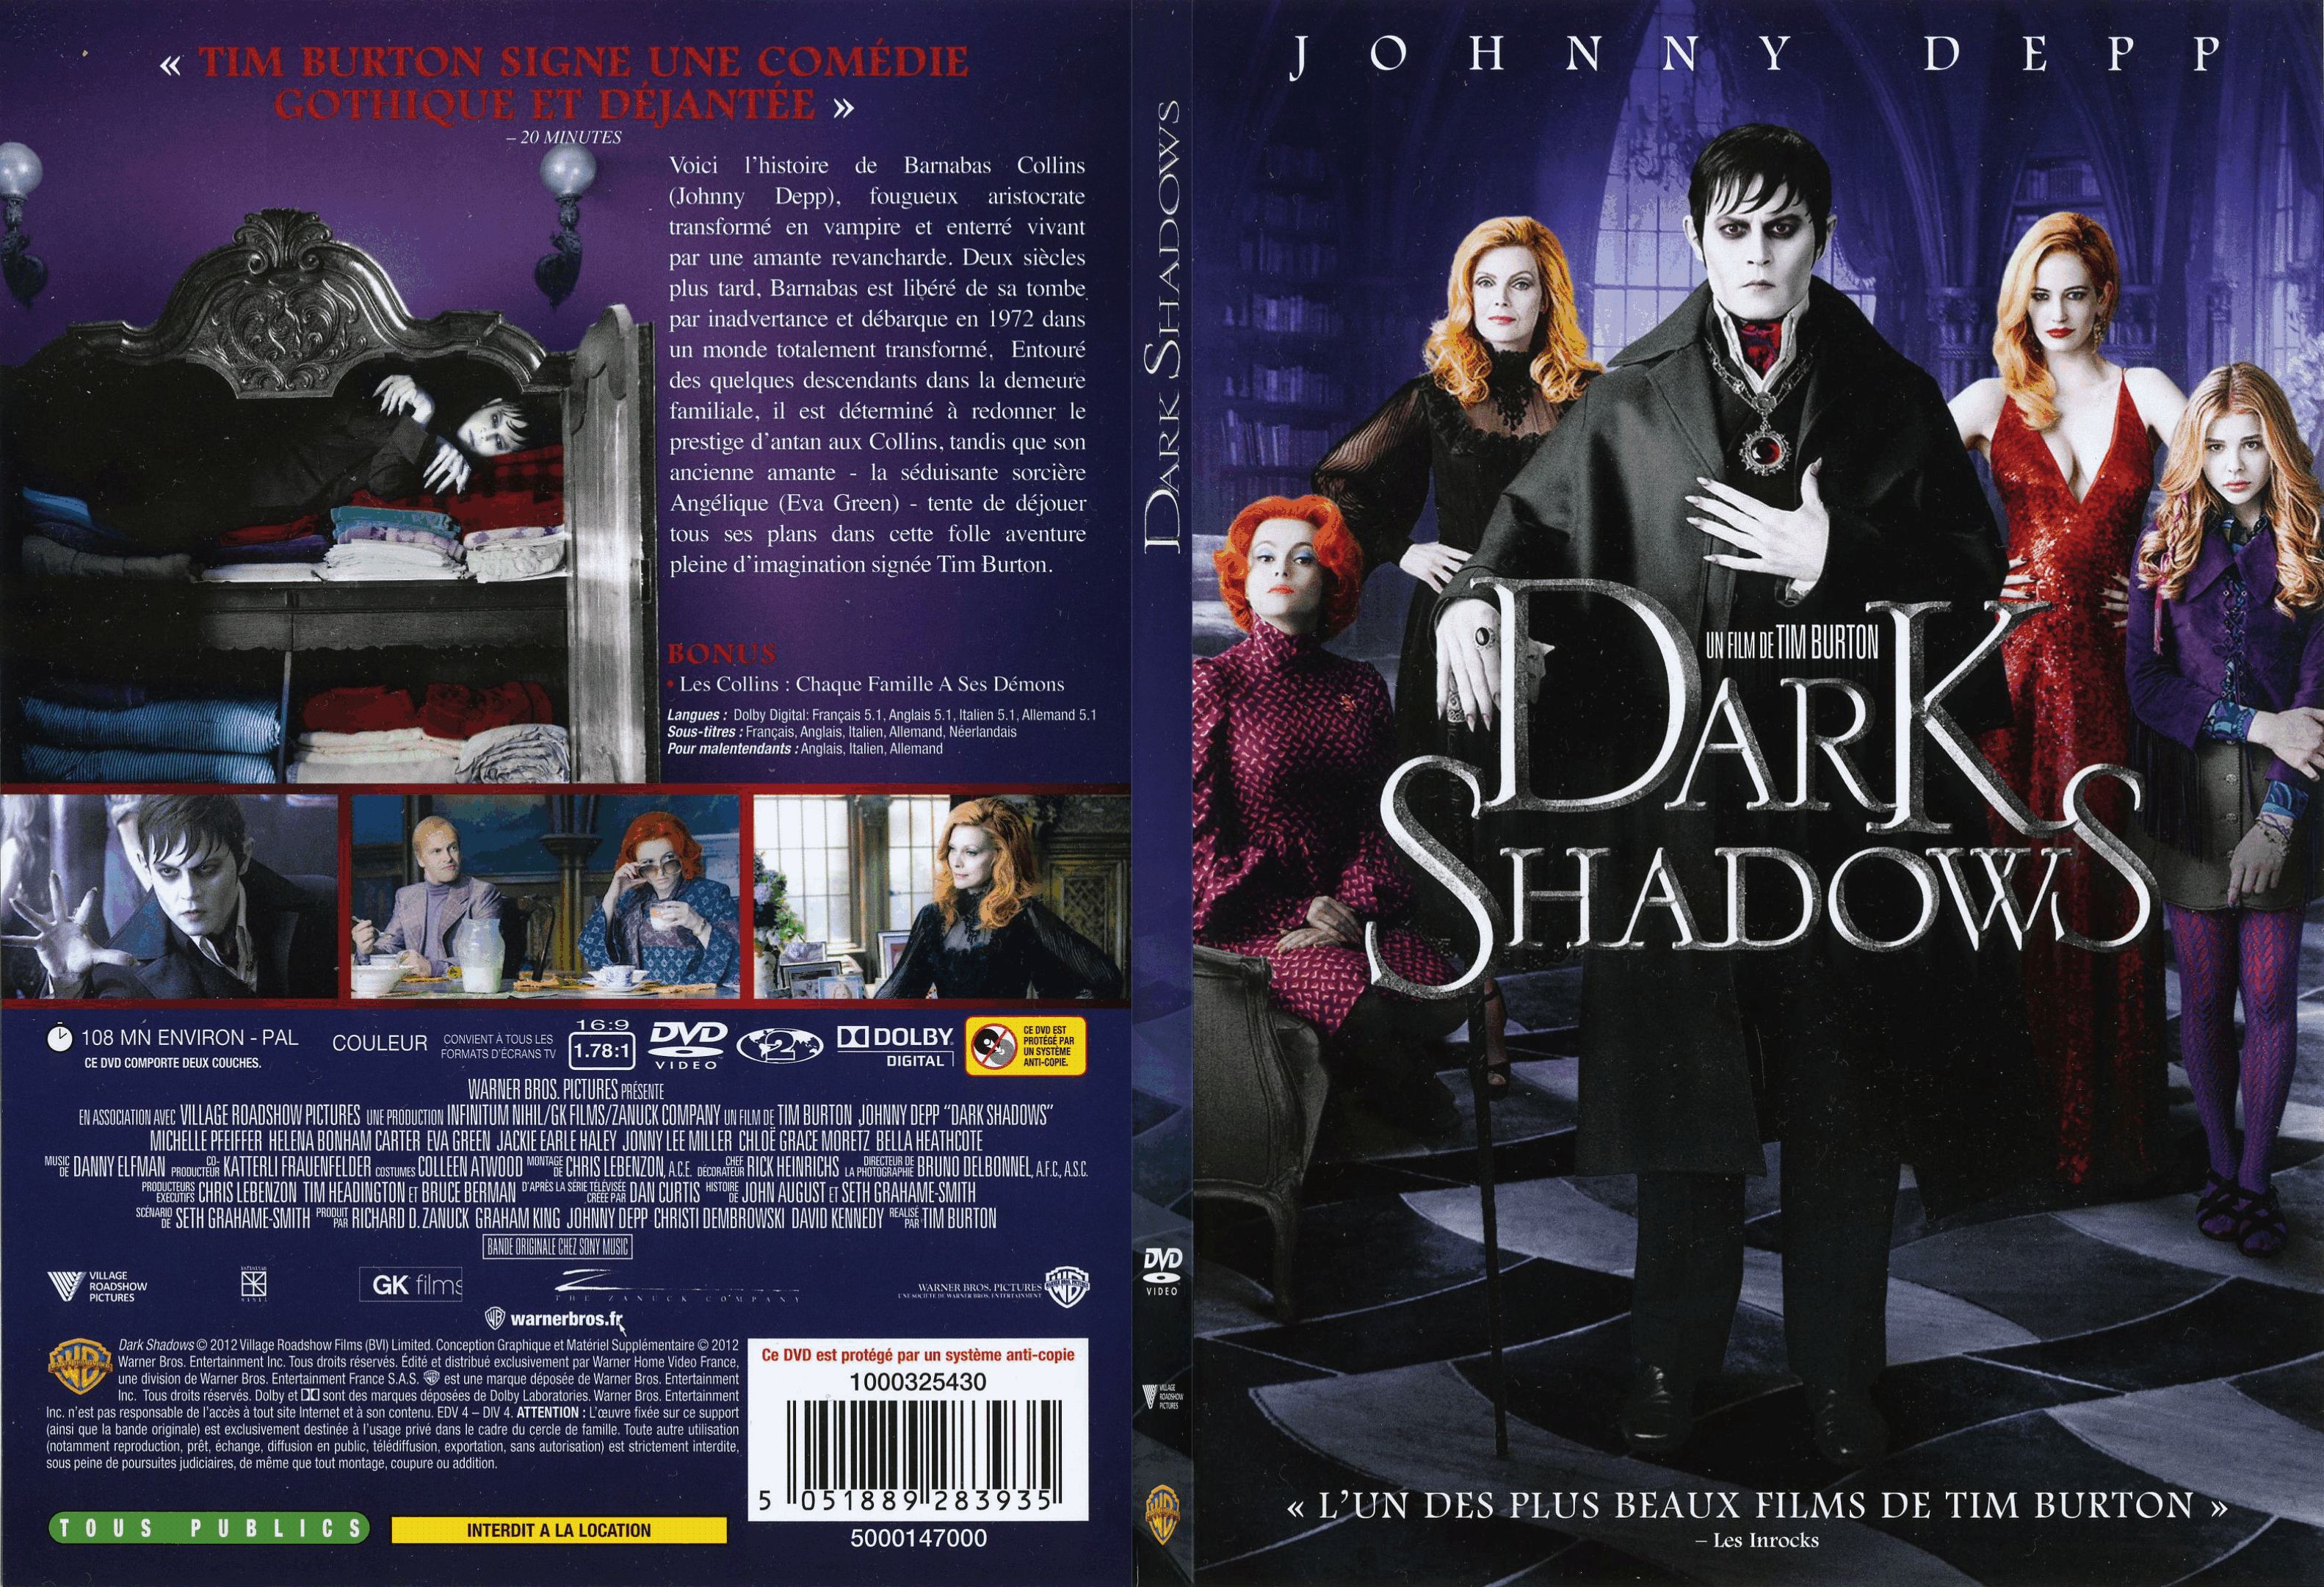 Jaquette DVD Dark shadow - SLIM